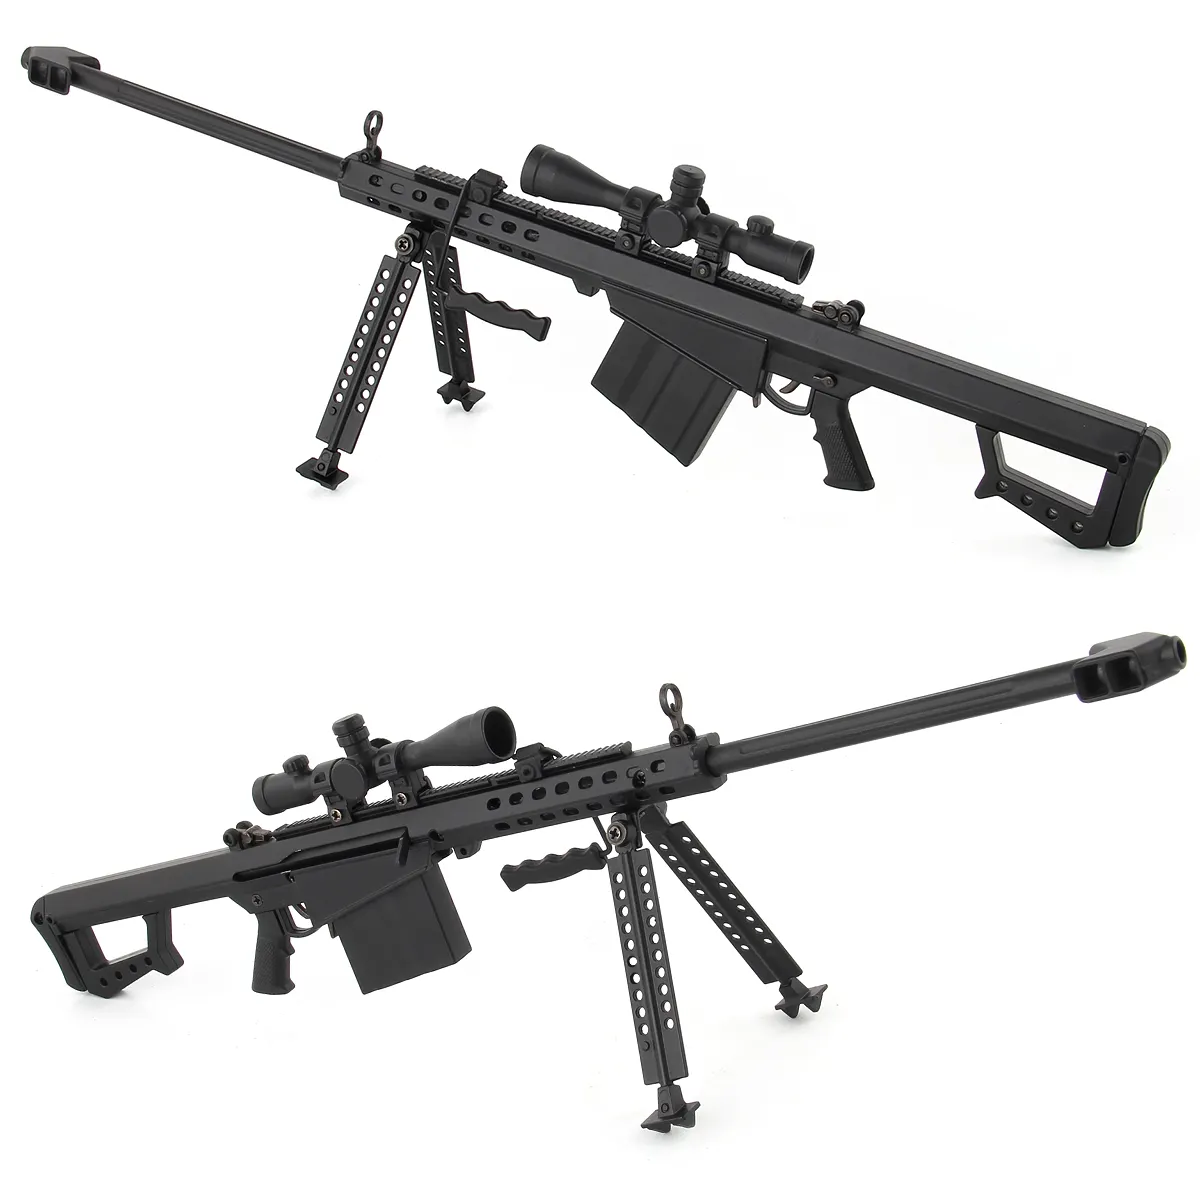 Pistolet en métal, Mini arme, modèle de pistolet en alliage, fusil de Sniper barrettt, AK47, jouet, livraison gratuite